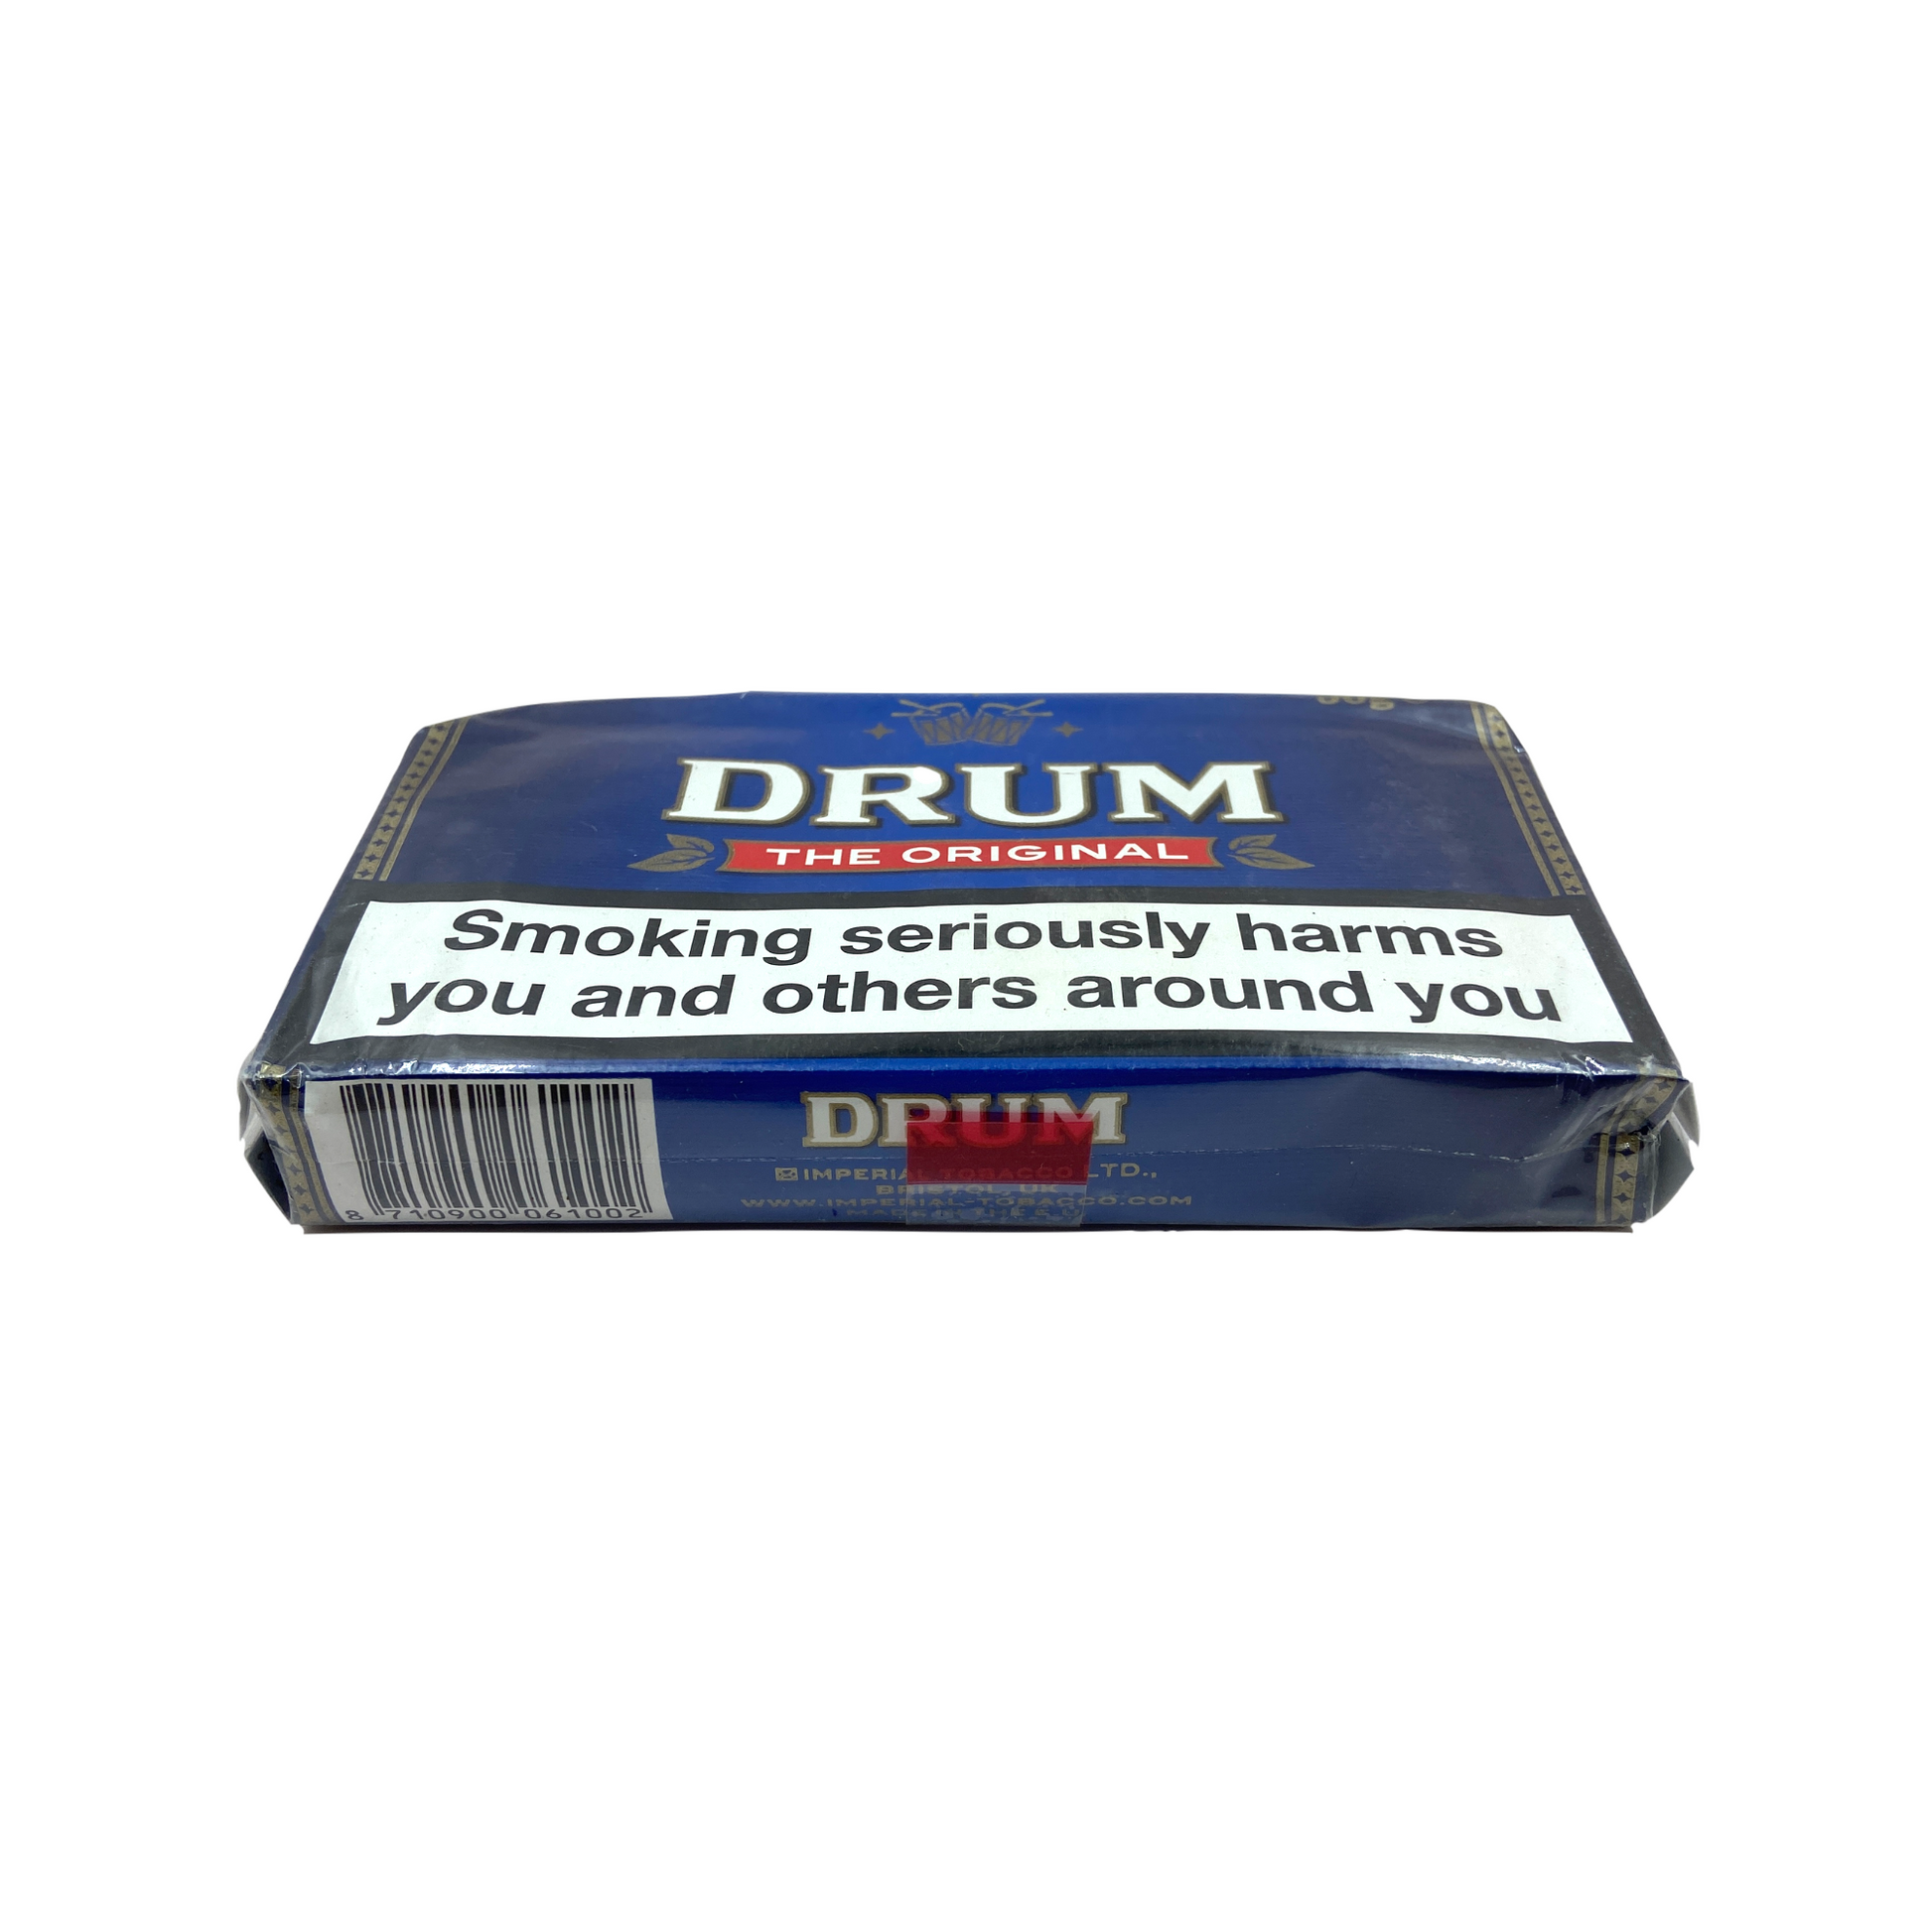 Drum Rolling Tobacco Original Online India